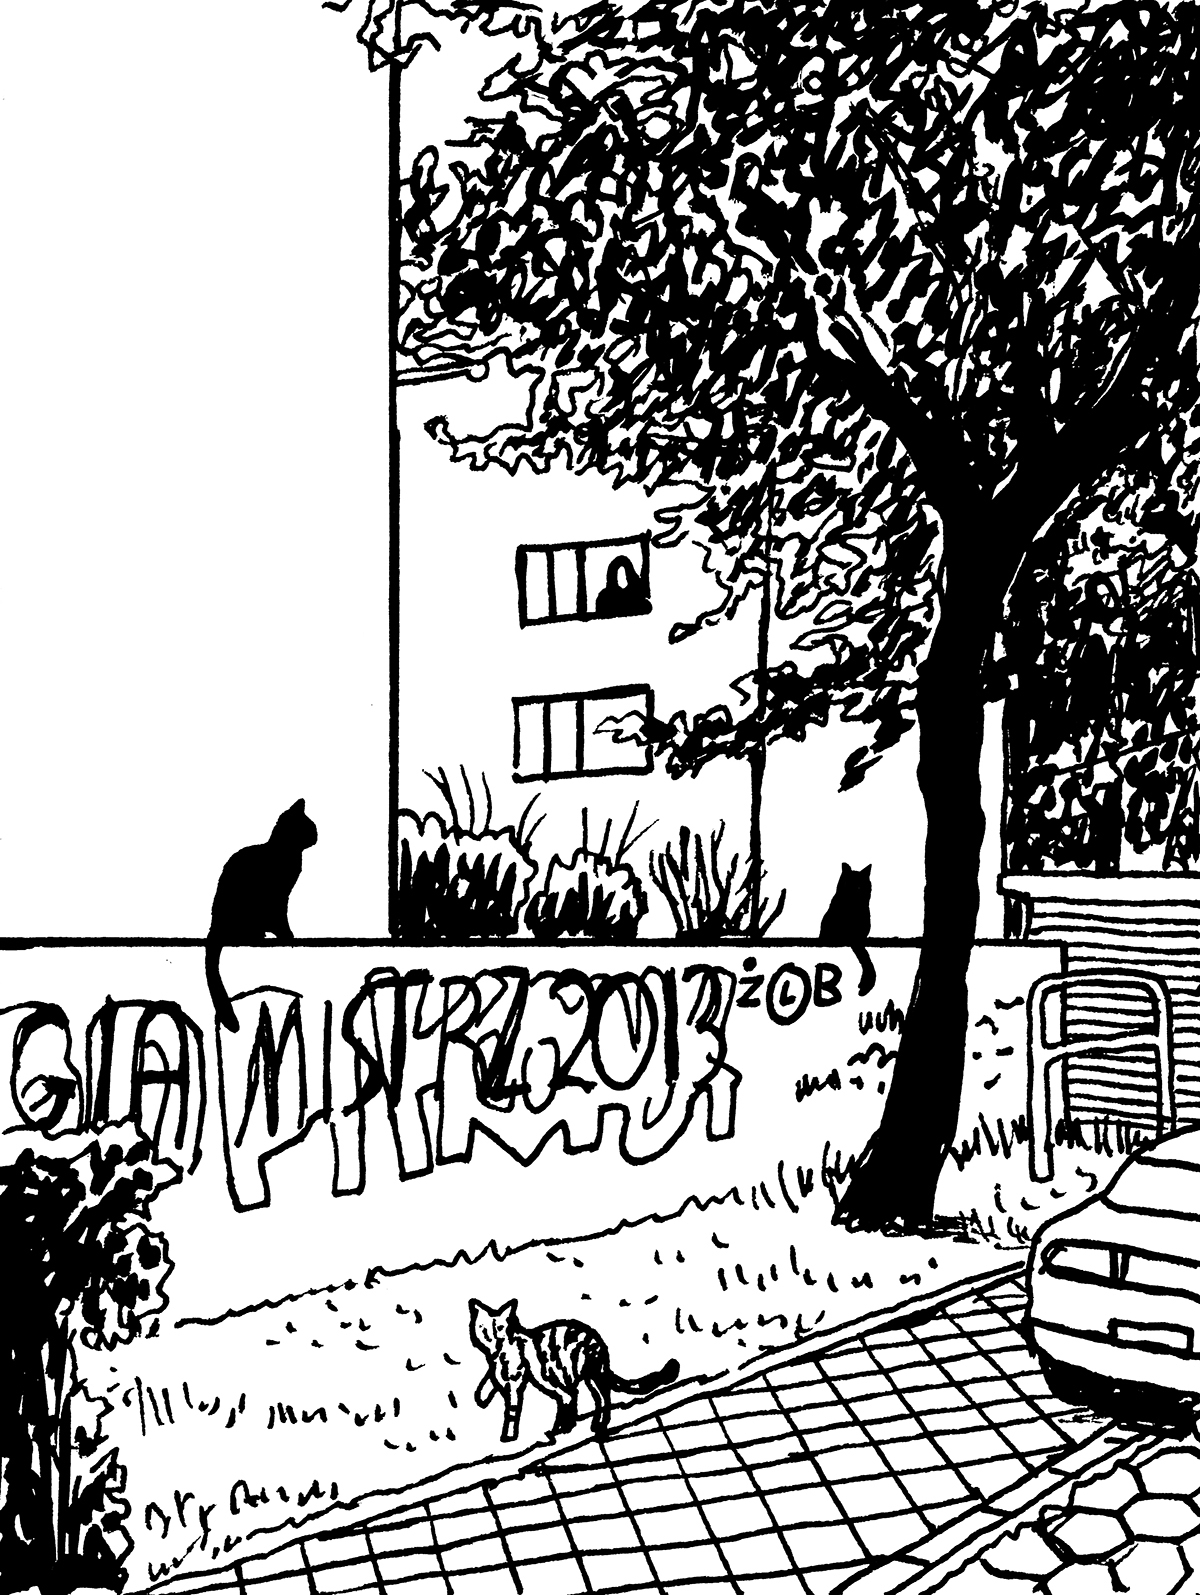 Prążkowany kot spaceruje po chodniku w stronę otagowanego sprejem murku, na którym siedzą dwa czarne koty. W tle, w oknie budynku, widoczna jest obserwująca scenkę postać.